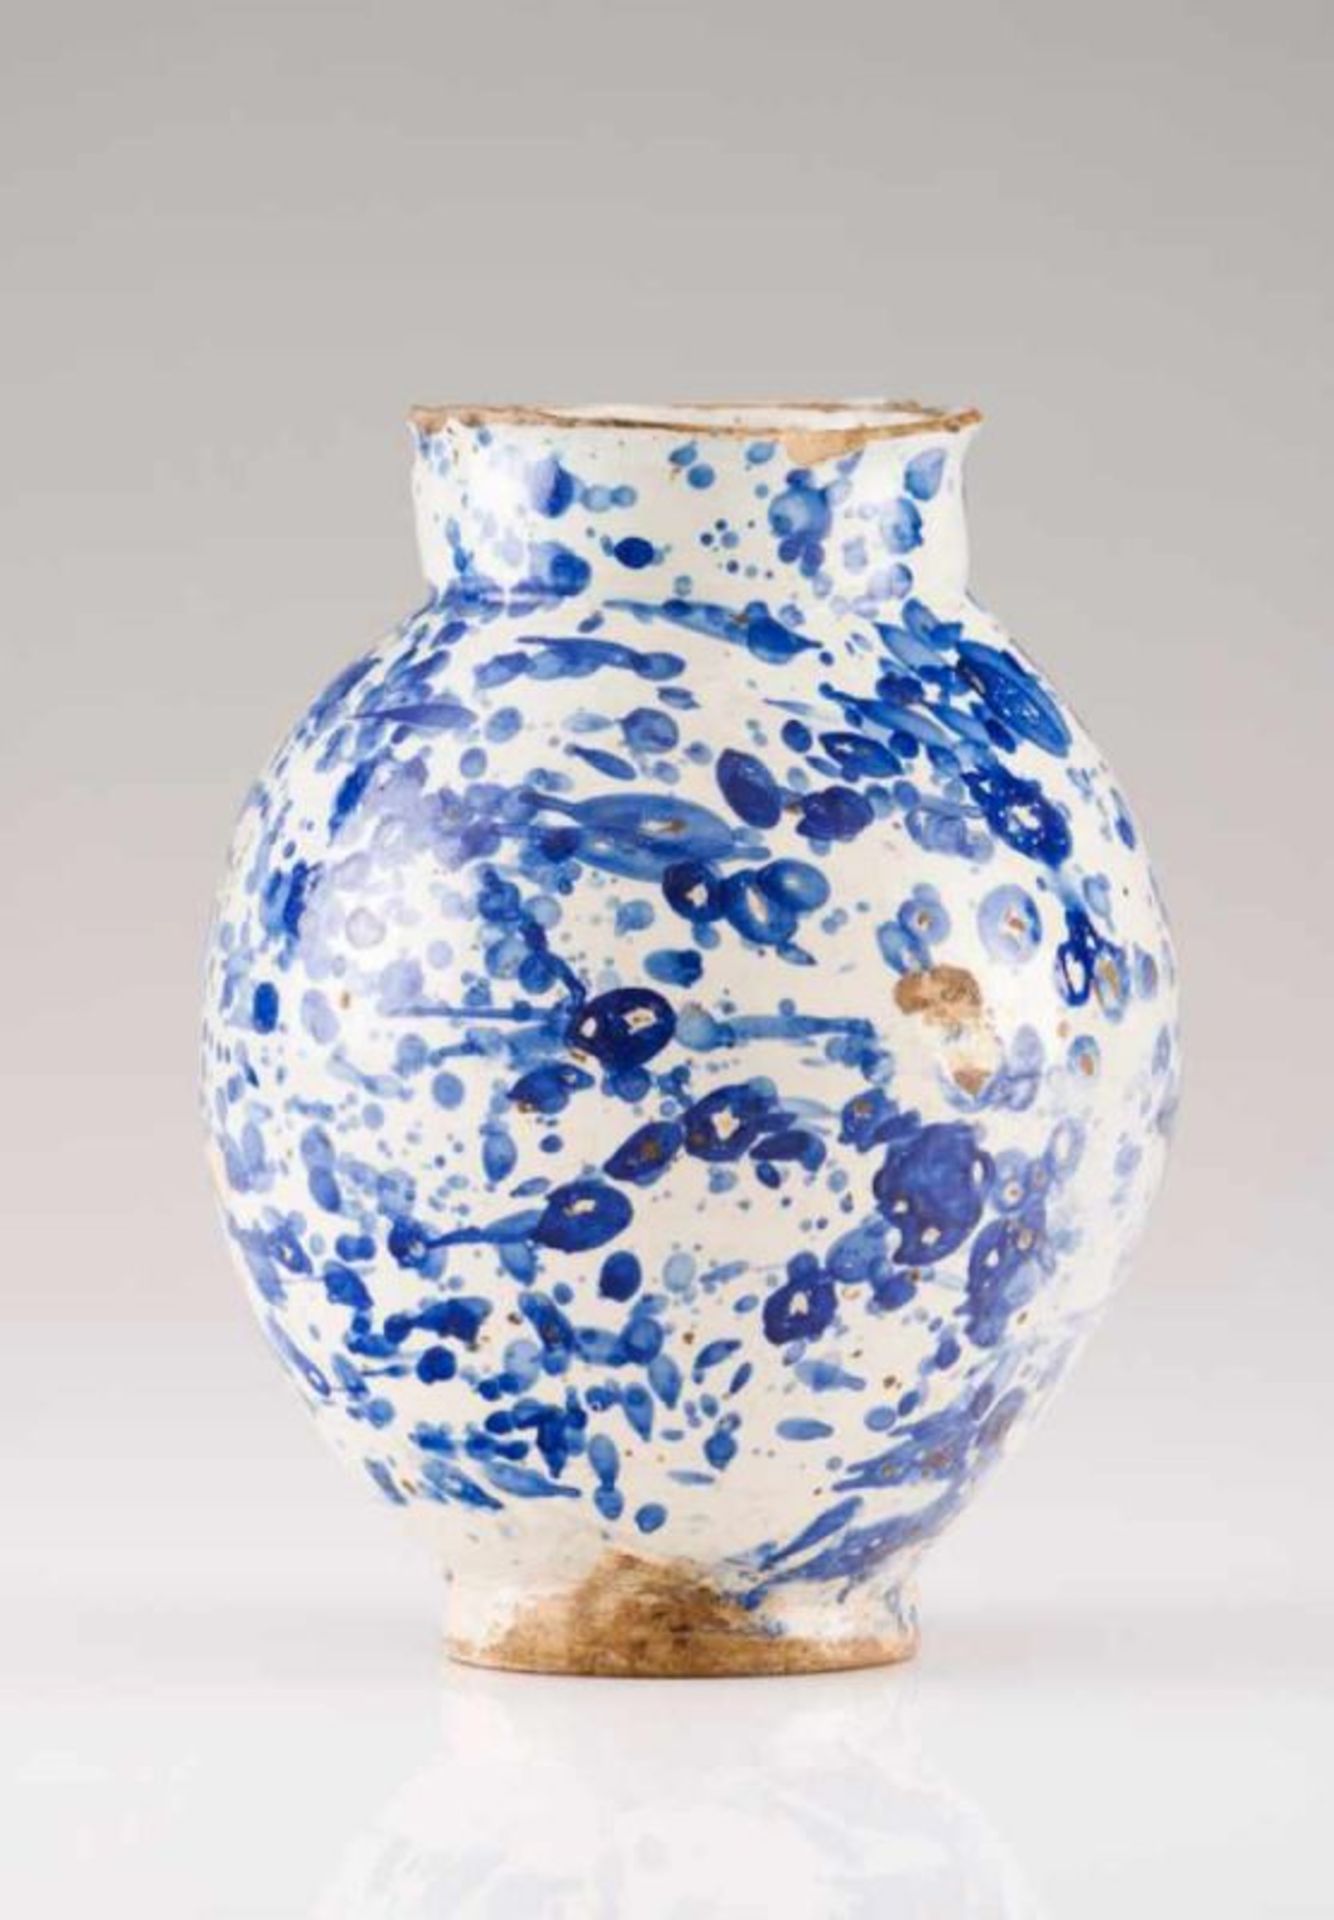 A vase Spanish faience Possibly Toledo or Talavera Puente From the "salpicada en azul sobre